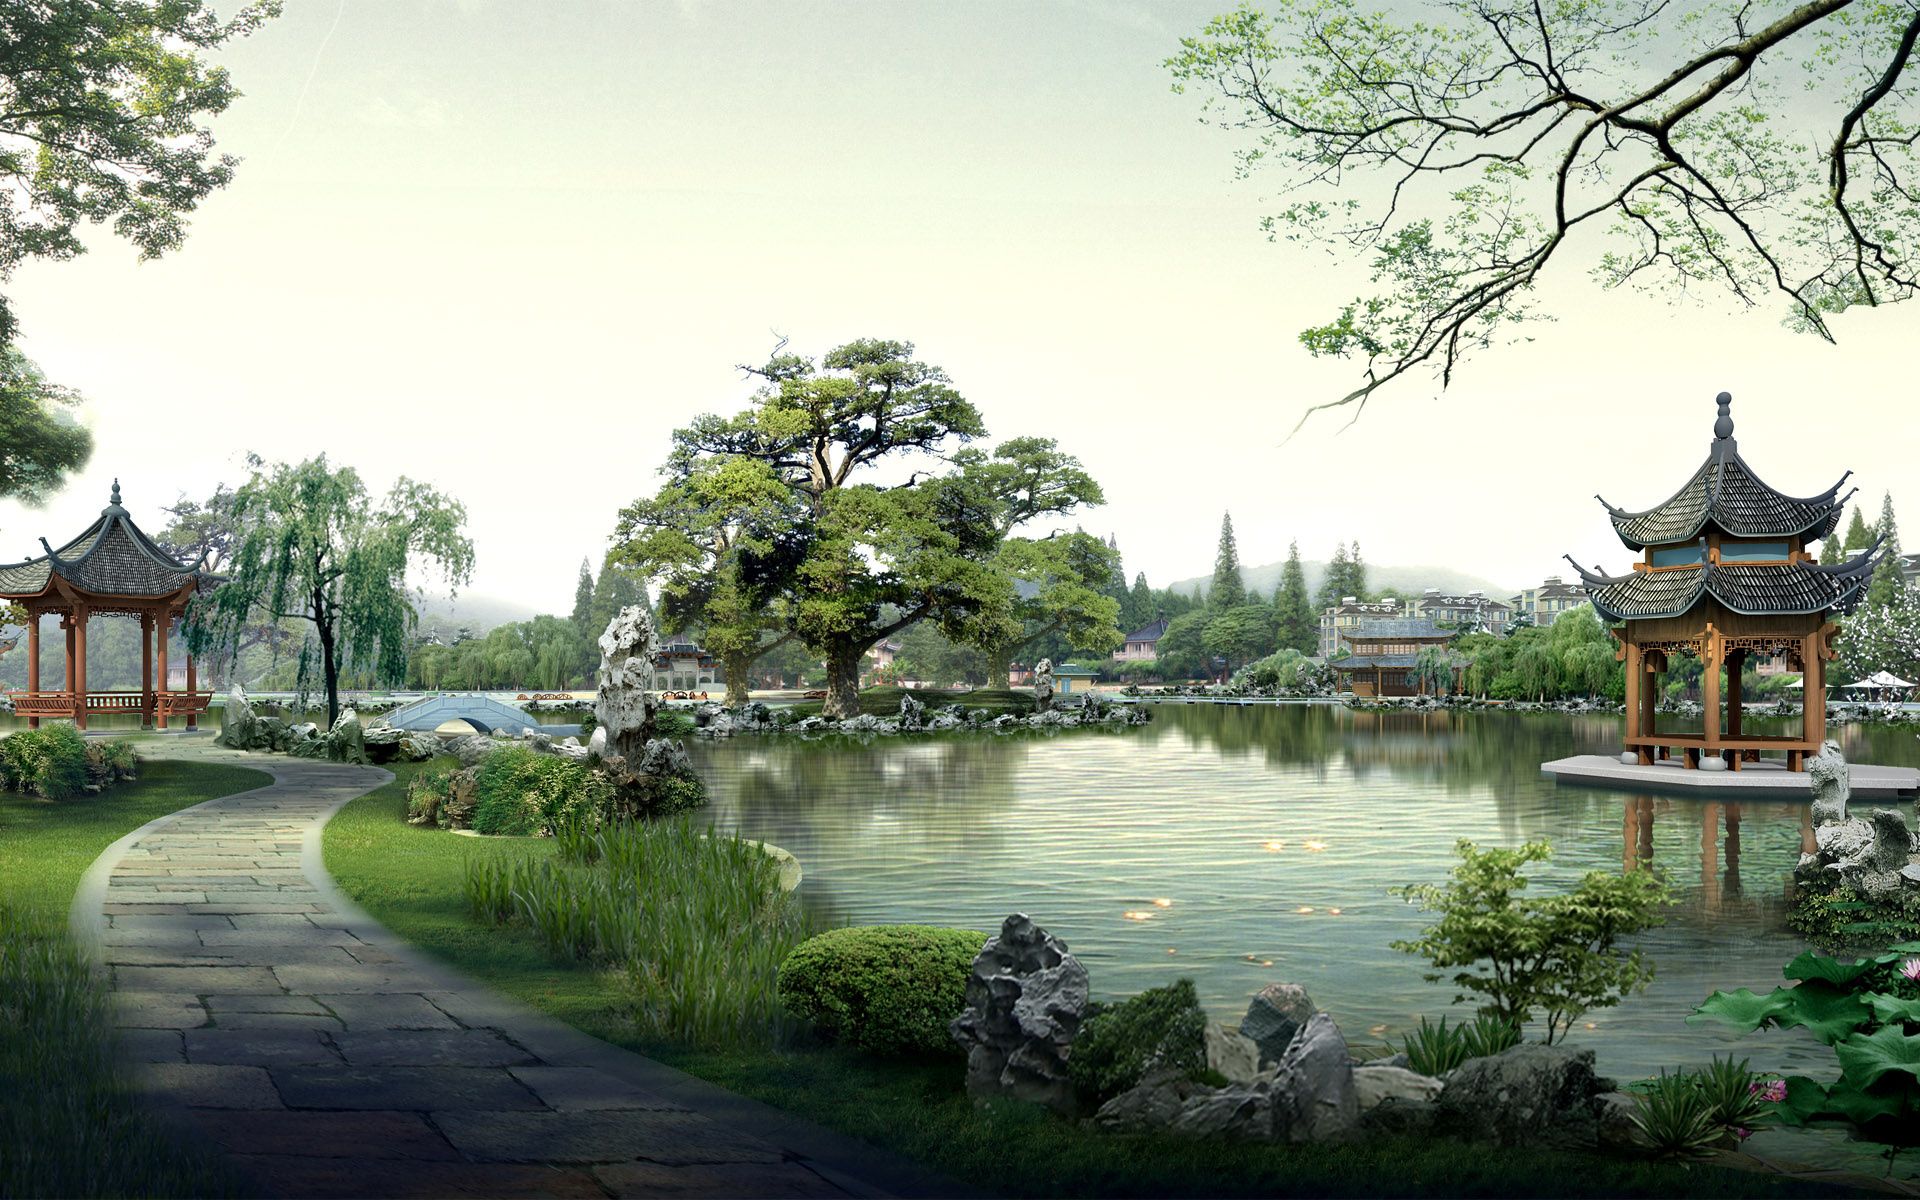 Fondos de jardines japoneses | Jardines de té japoneses y bonsai | Paisaje